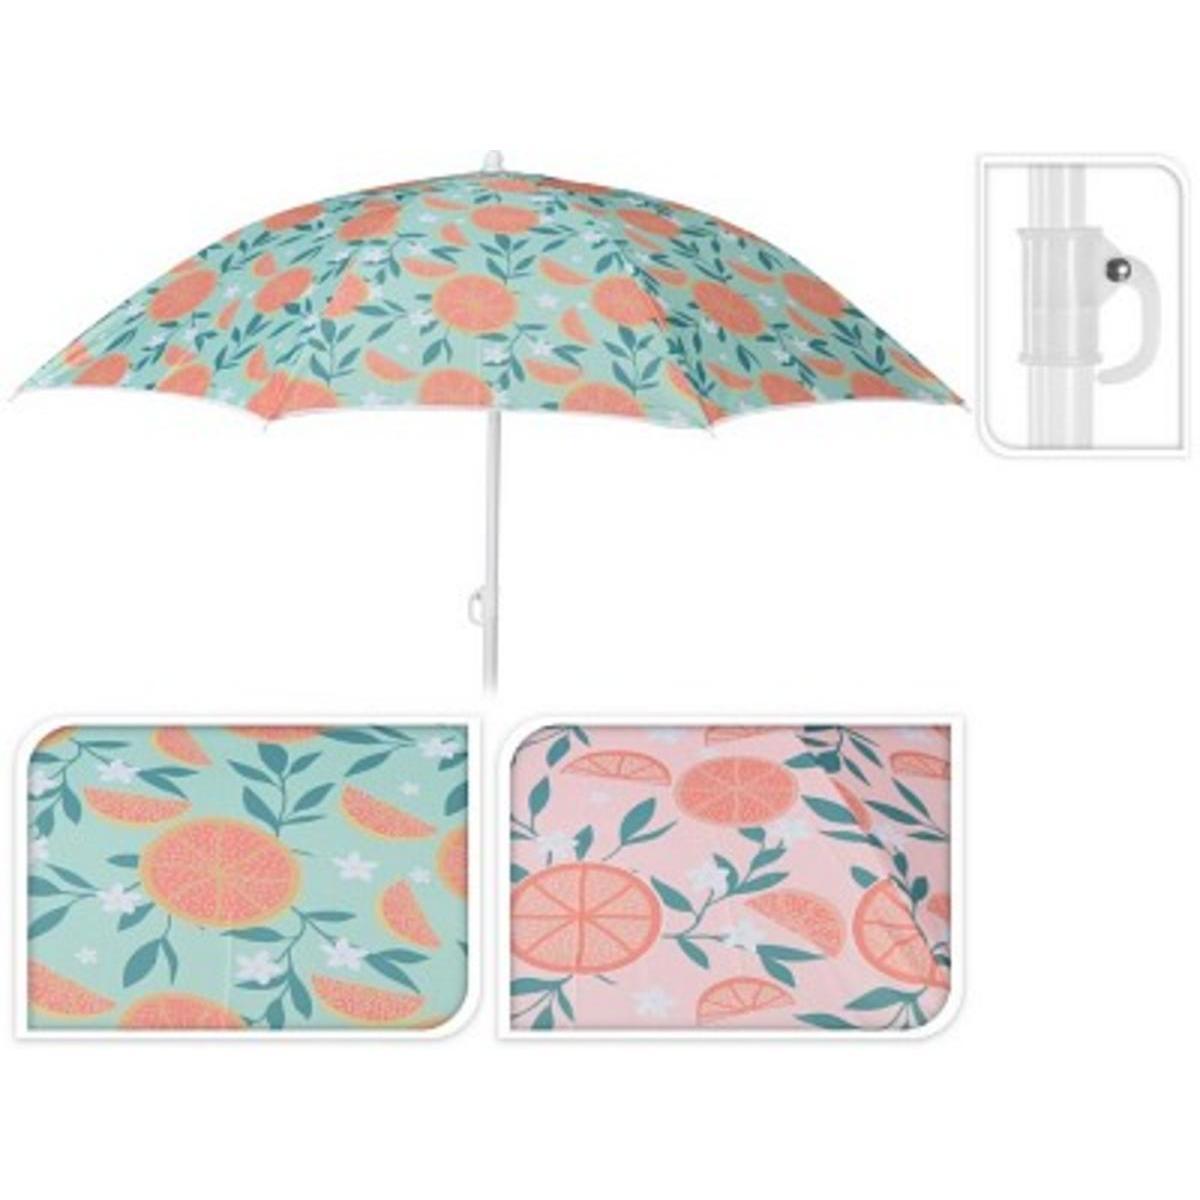 Parasol de plage - ø 170 cm - Différents modèles